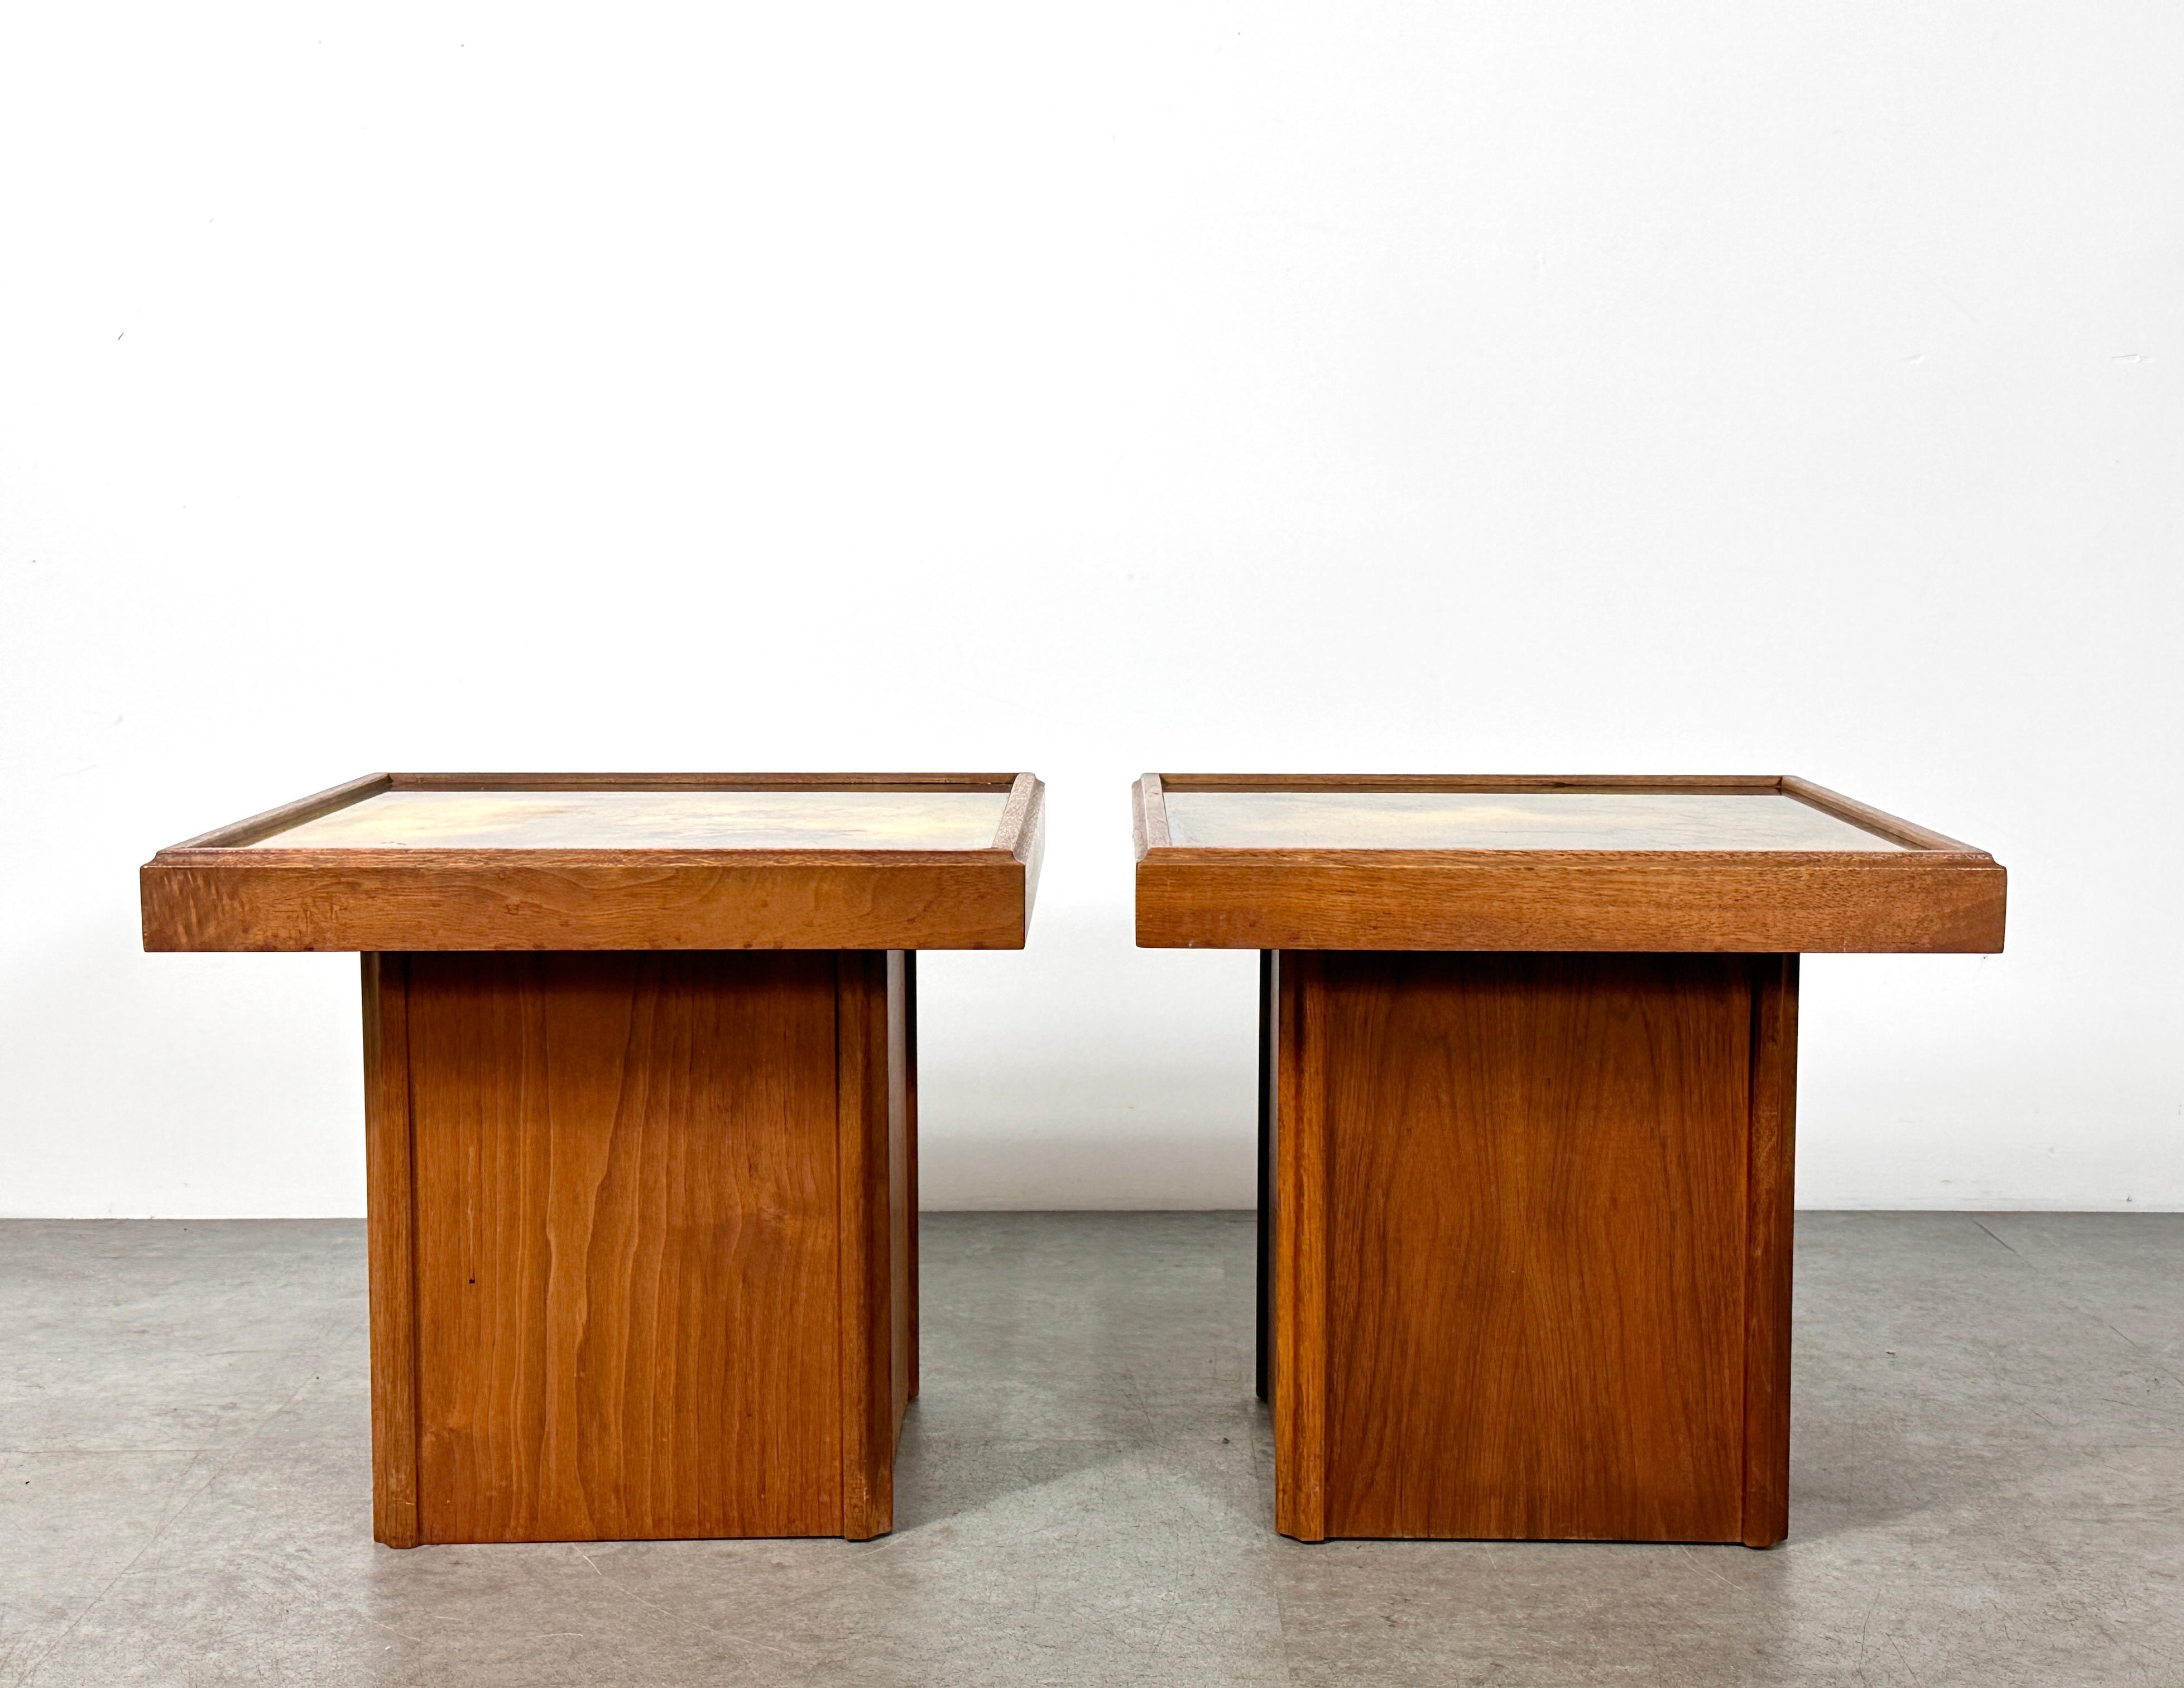 Einzigartiges Paar Beistelltische, entworfen von John Keal für Brown Saltman, ca. 1950er Jahre
Quadratische Sockel aus Nussbaumholz mit dekorativen, hinterlackierten Glasflächen in gesprenkelten Goldtönen
Beide Tabellen behalten ihr ursprüngliches